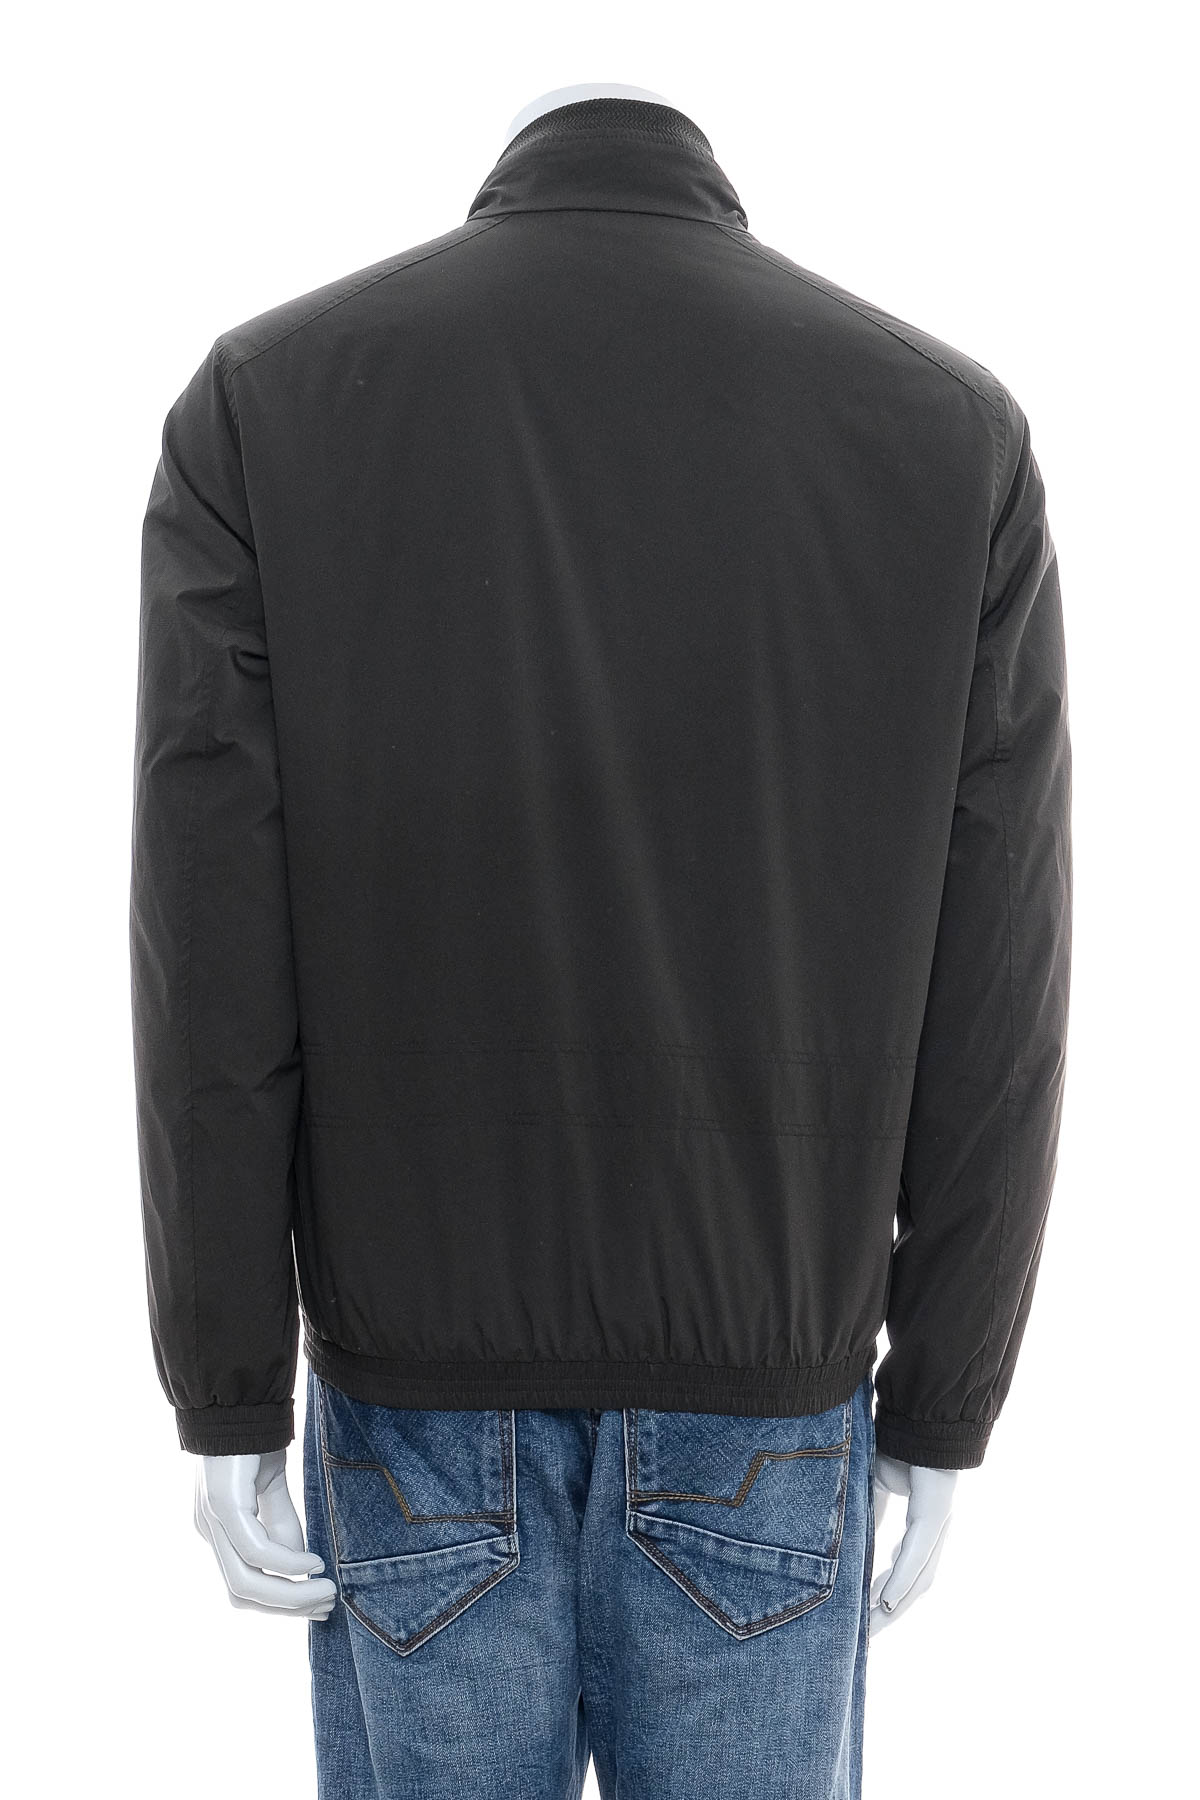 Men's jacket - Pierre Cardin - 1